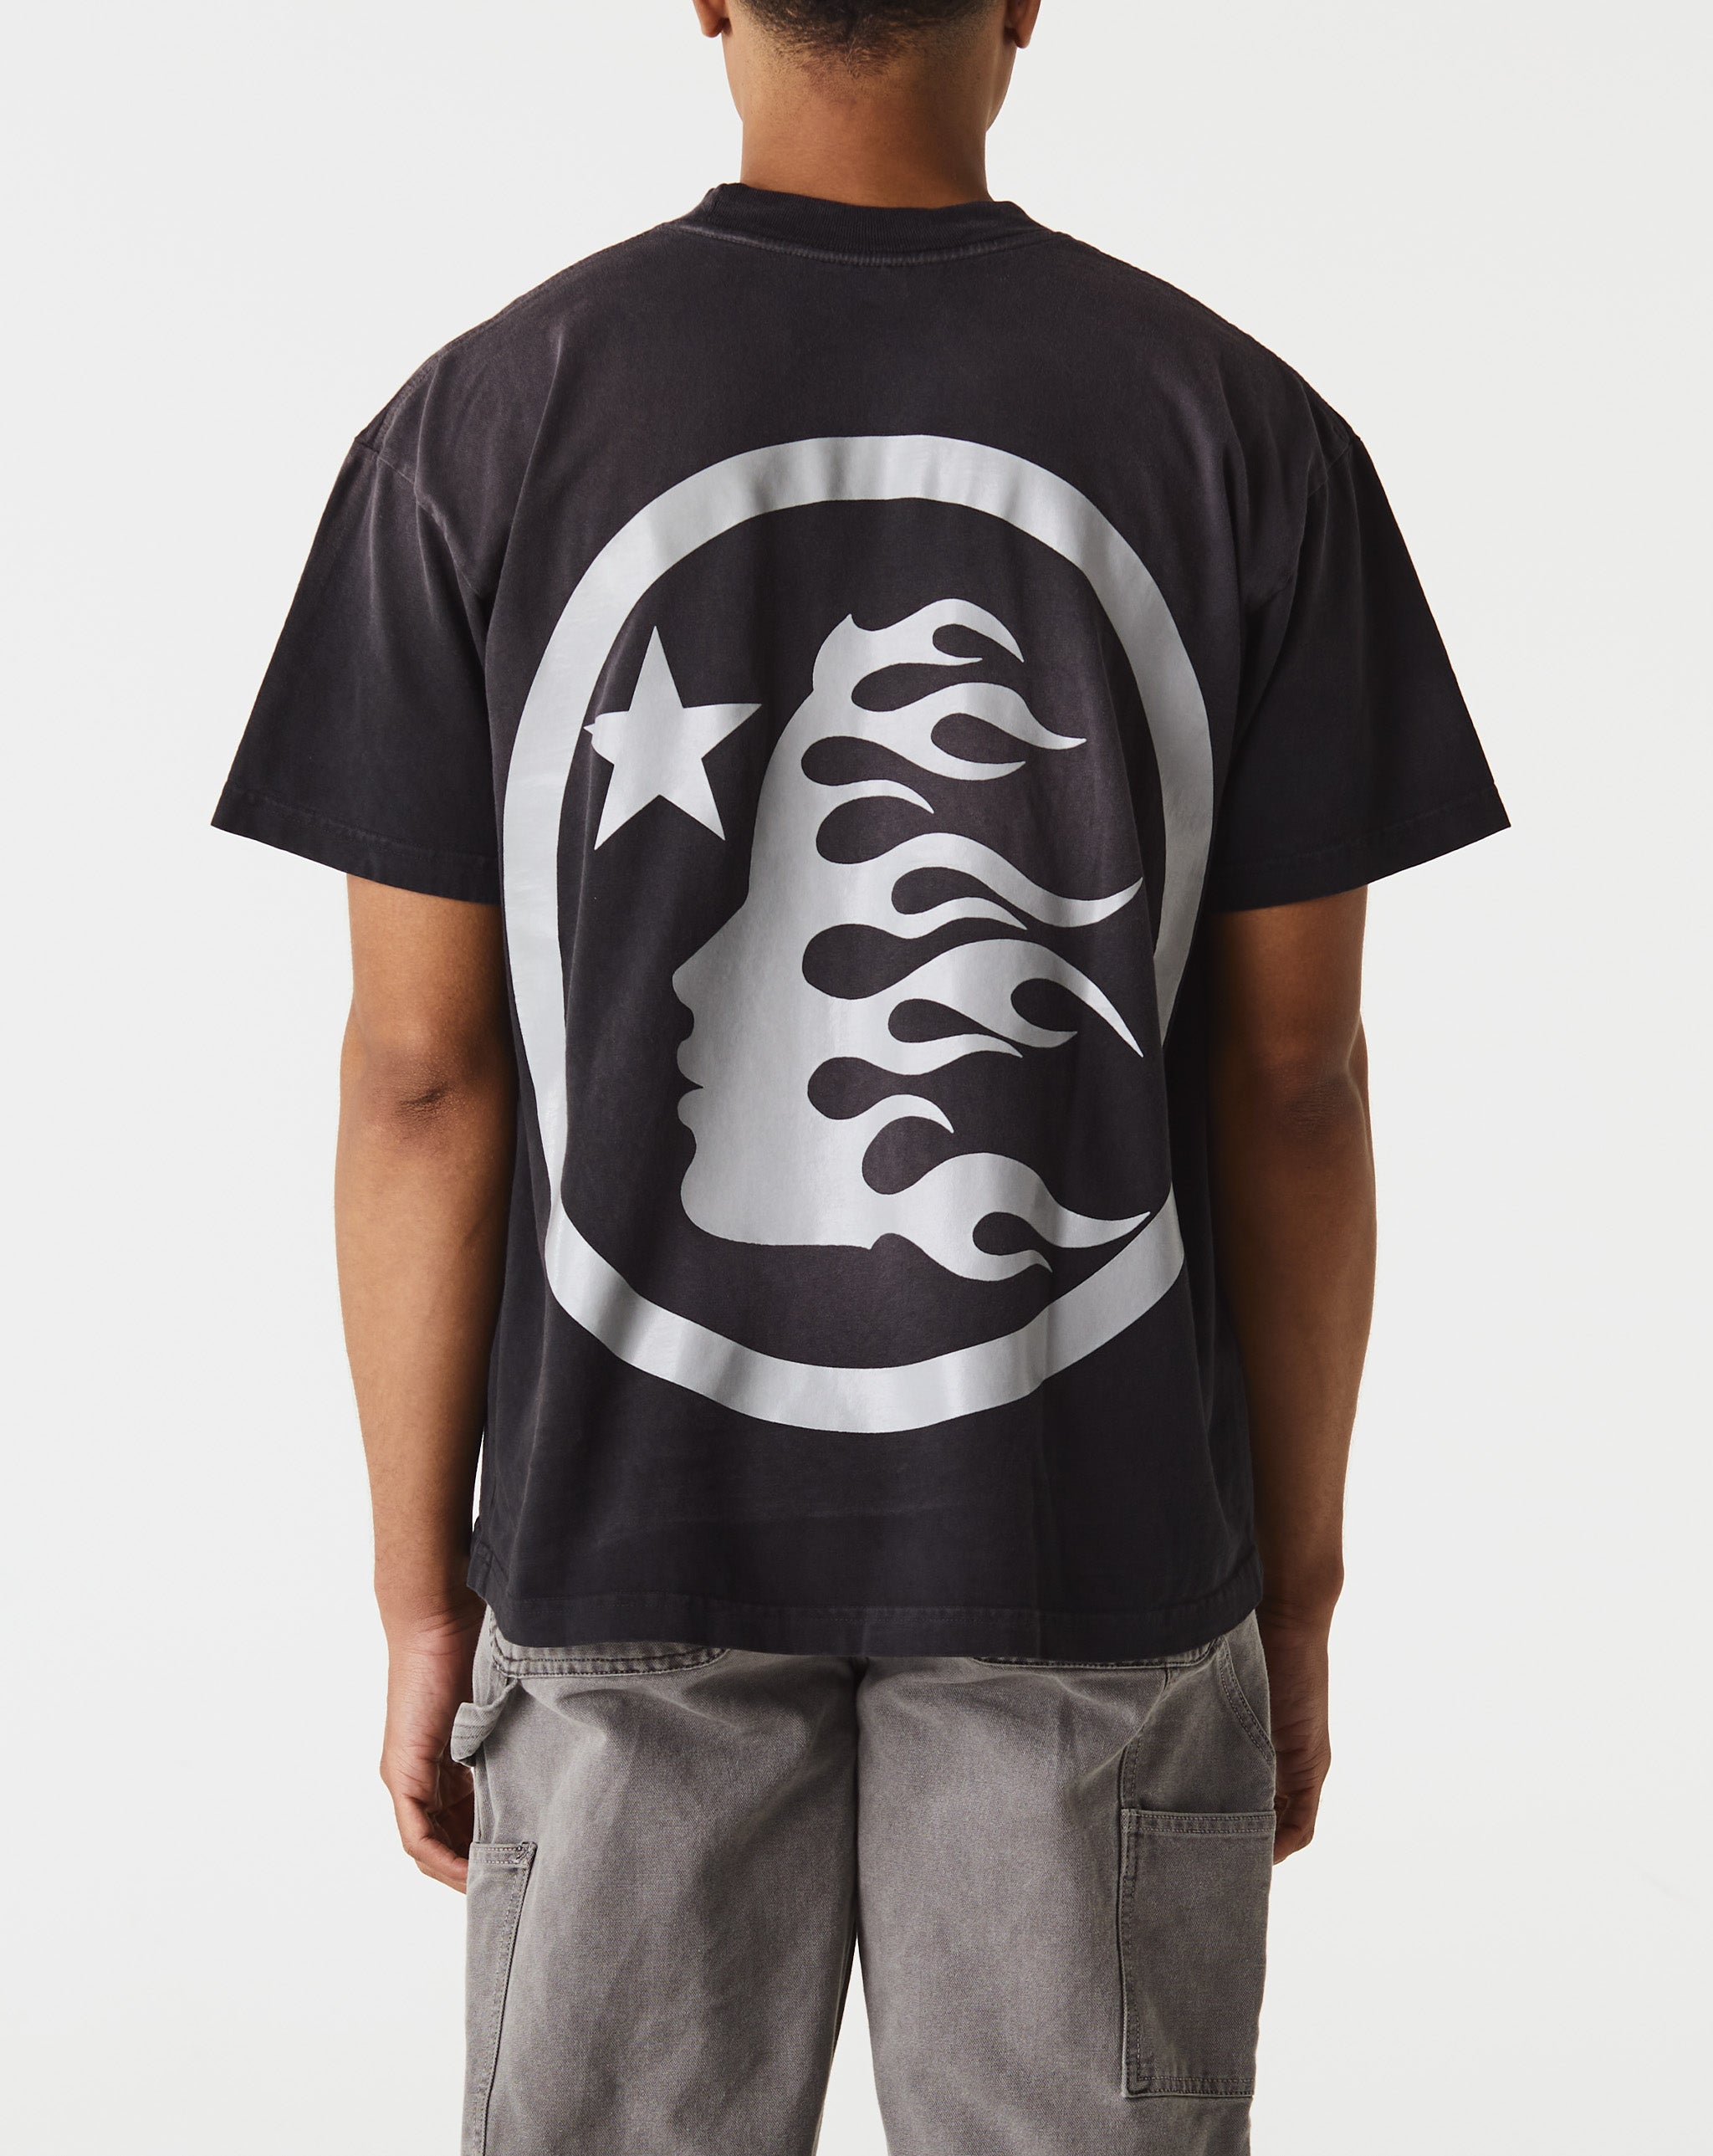 Hellstar Gel Sport Logo T-Shirt  - Cheap Cerbe Jordan outlet